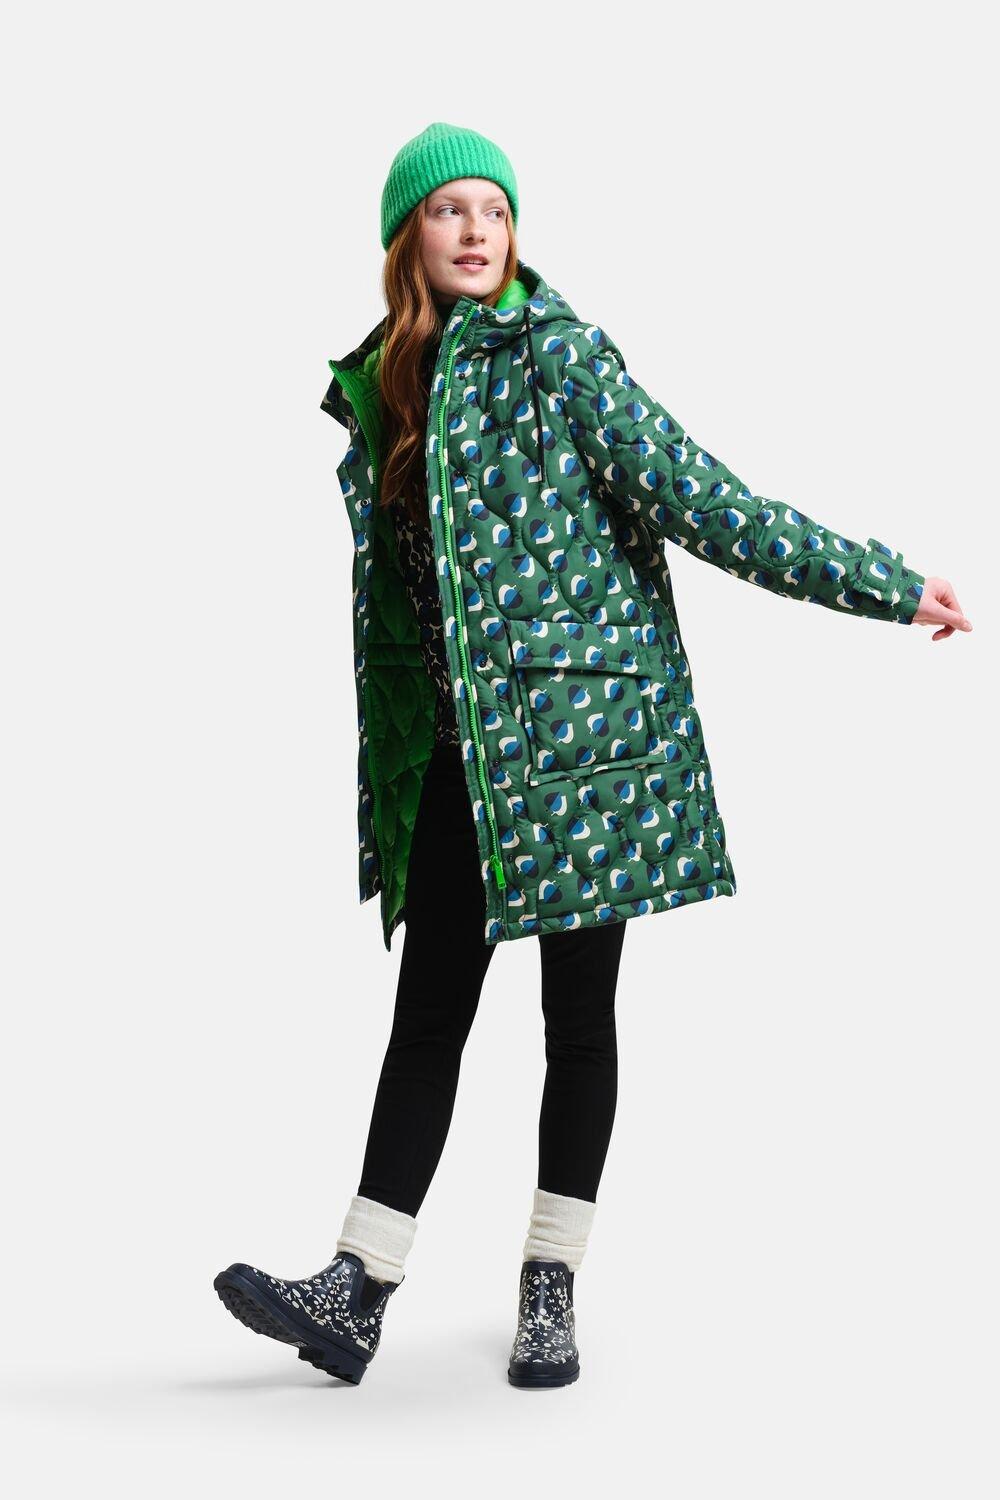 Водонепроницаемая куртка Isotex средней длины Orla Kiely Quilt Regatta, зеленый женское кожаное пальто средней длины костюмный воротник плащ из овчины осенне зимнее пальто свободный силуэт натуральное пальто